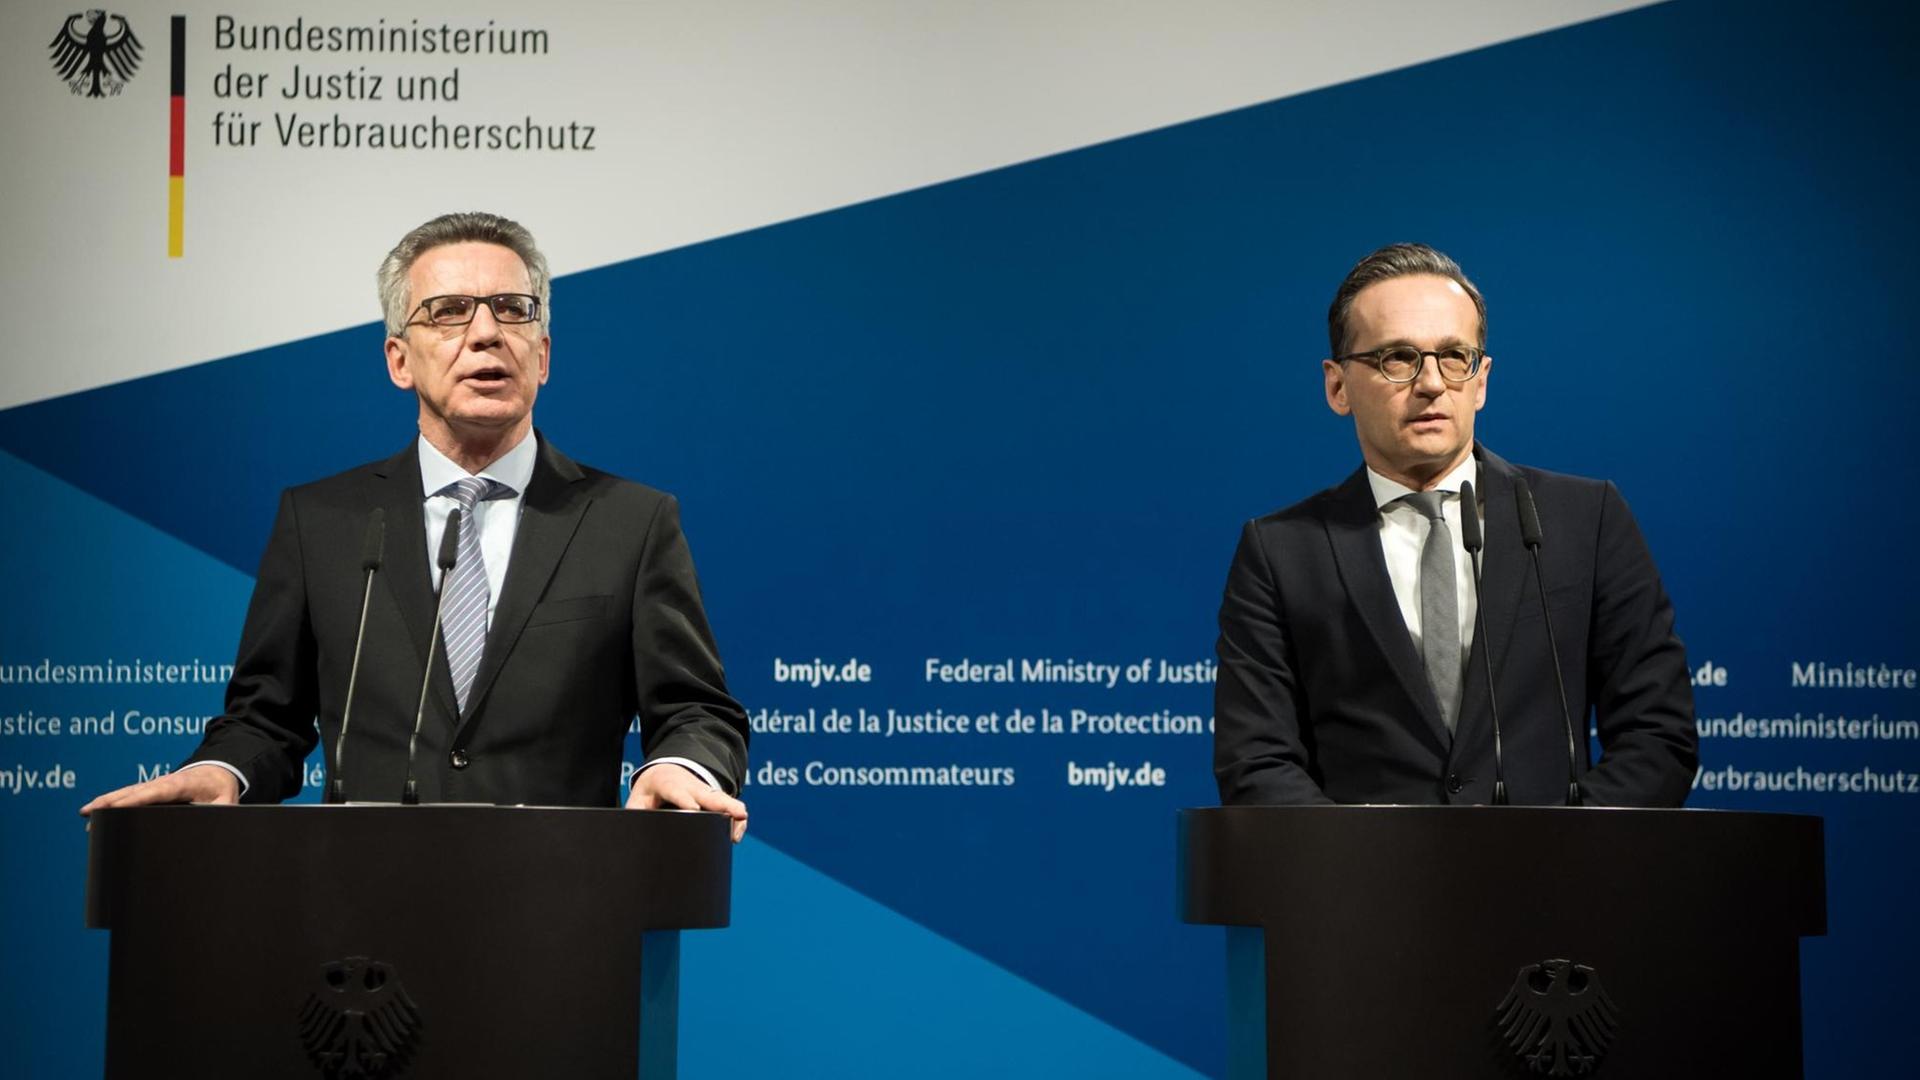 Nach dem Anschlag auf dem Berliner Breitscheidplatz legen Bundesinnenminister Thomas de Maizière (CDU) und Bundesjustizminister Heiko Maas (SPD) am 10. Januar 2017 ihren "Zehnpunkteplan" vor.